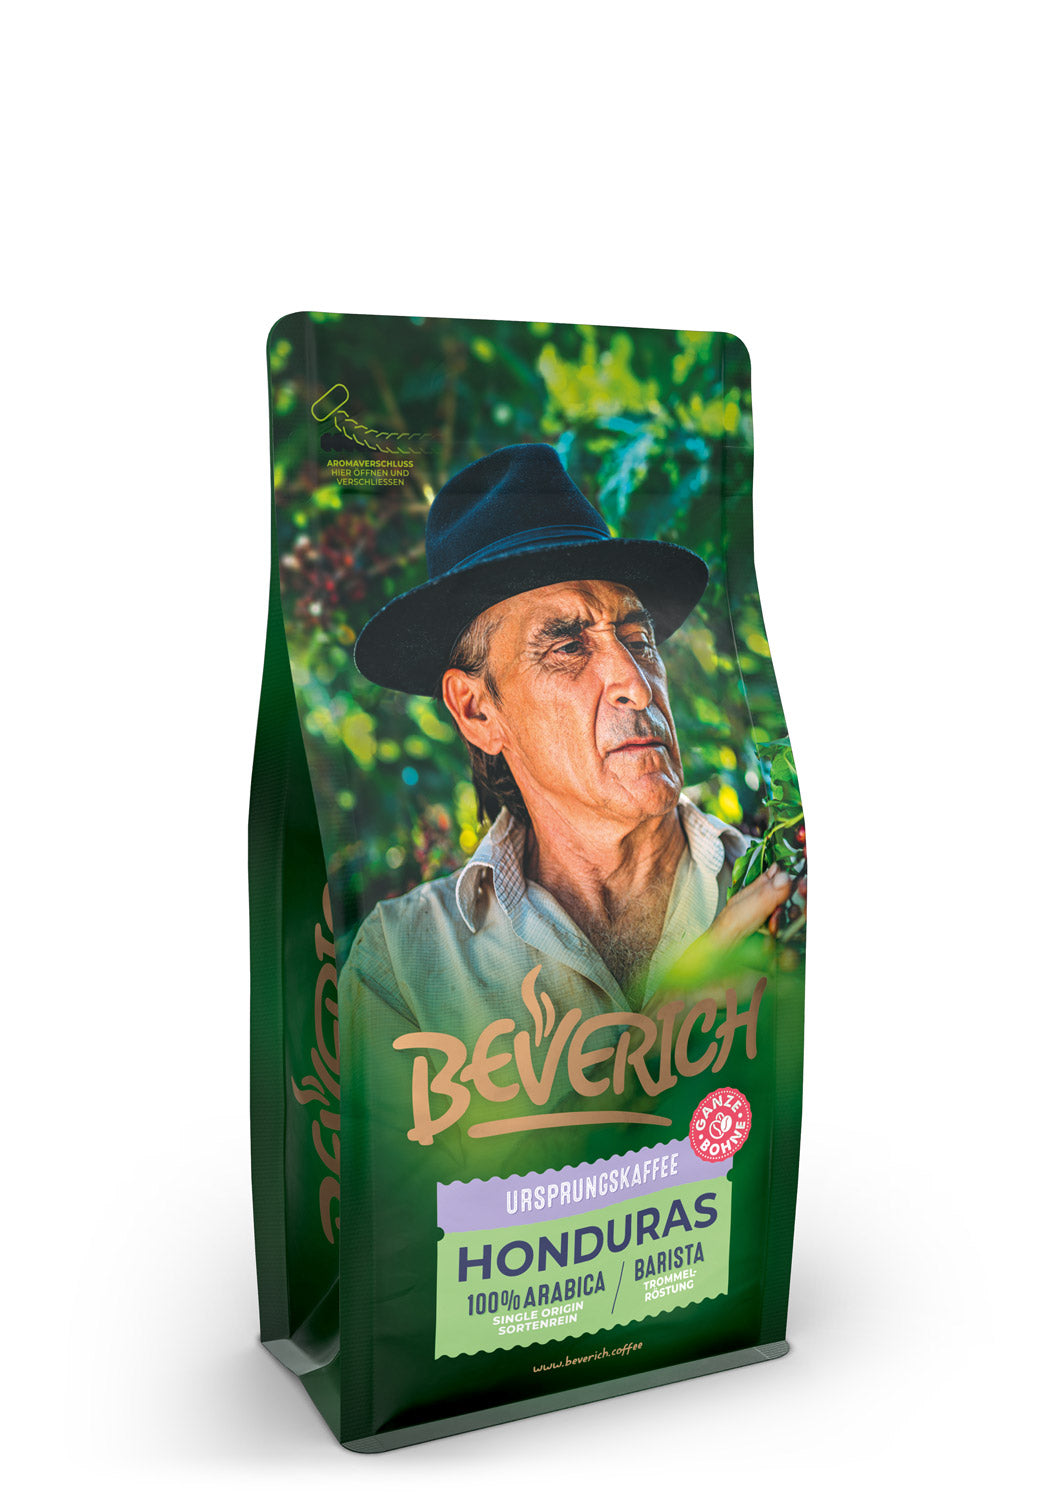 BEVERICH - Ursprungskaffee "Honduras" (250g)